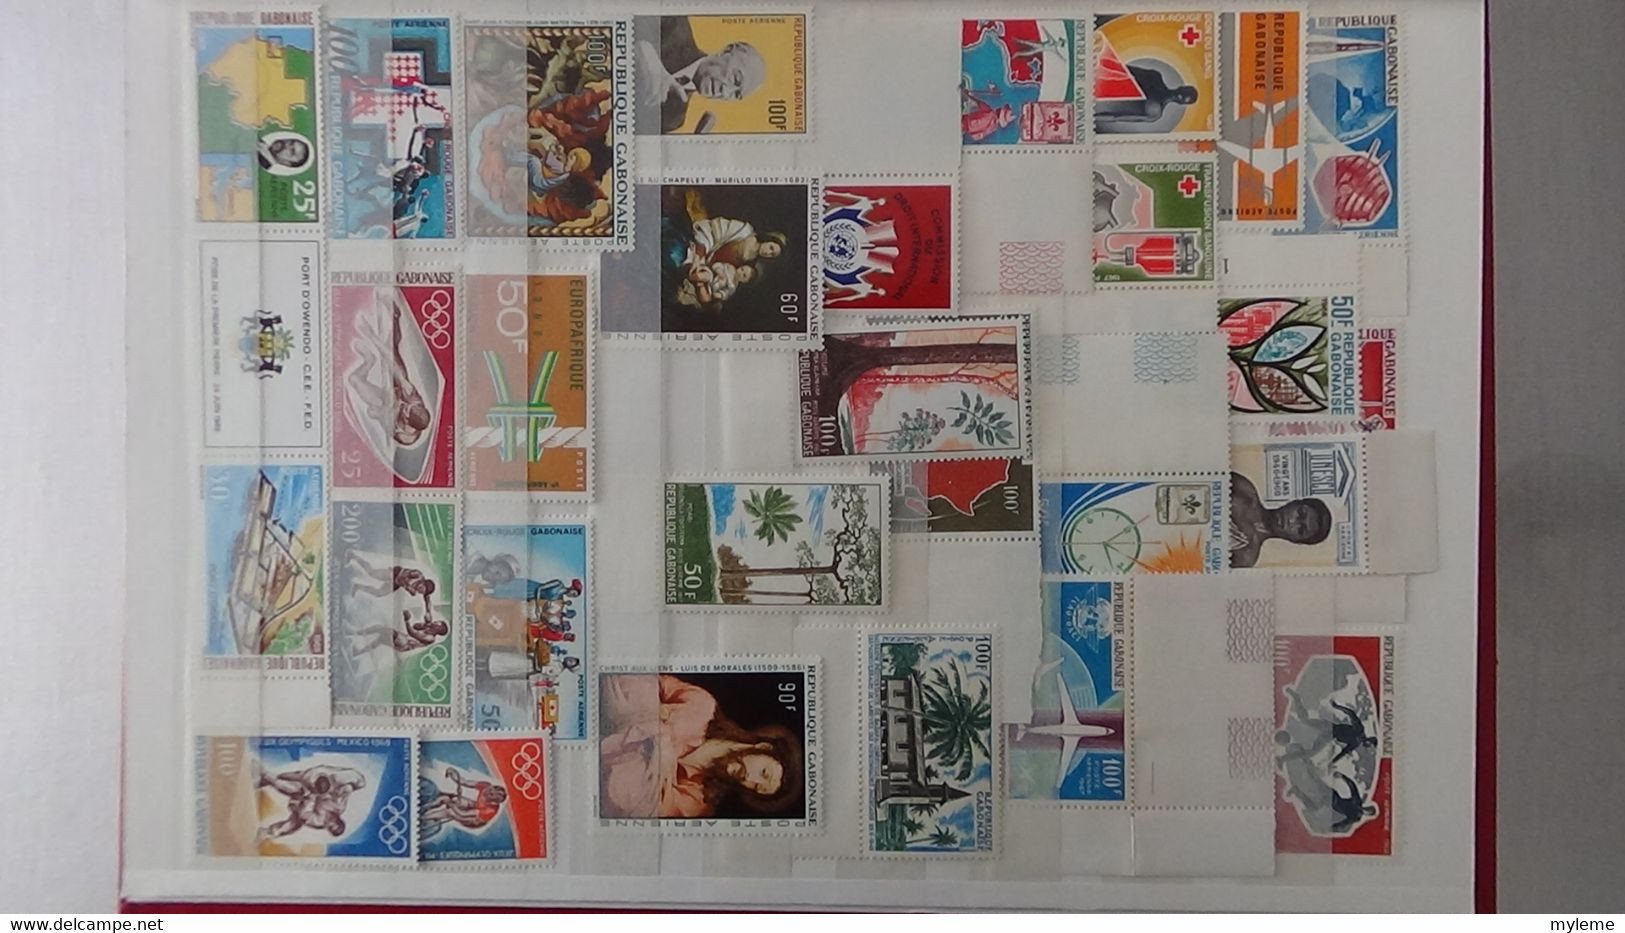 L43 Collection timbres ** de différents pays d'Afrique dont Congo, Centrafrique, Dahomey, Gabon ... Voir commentaires